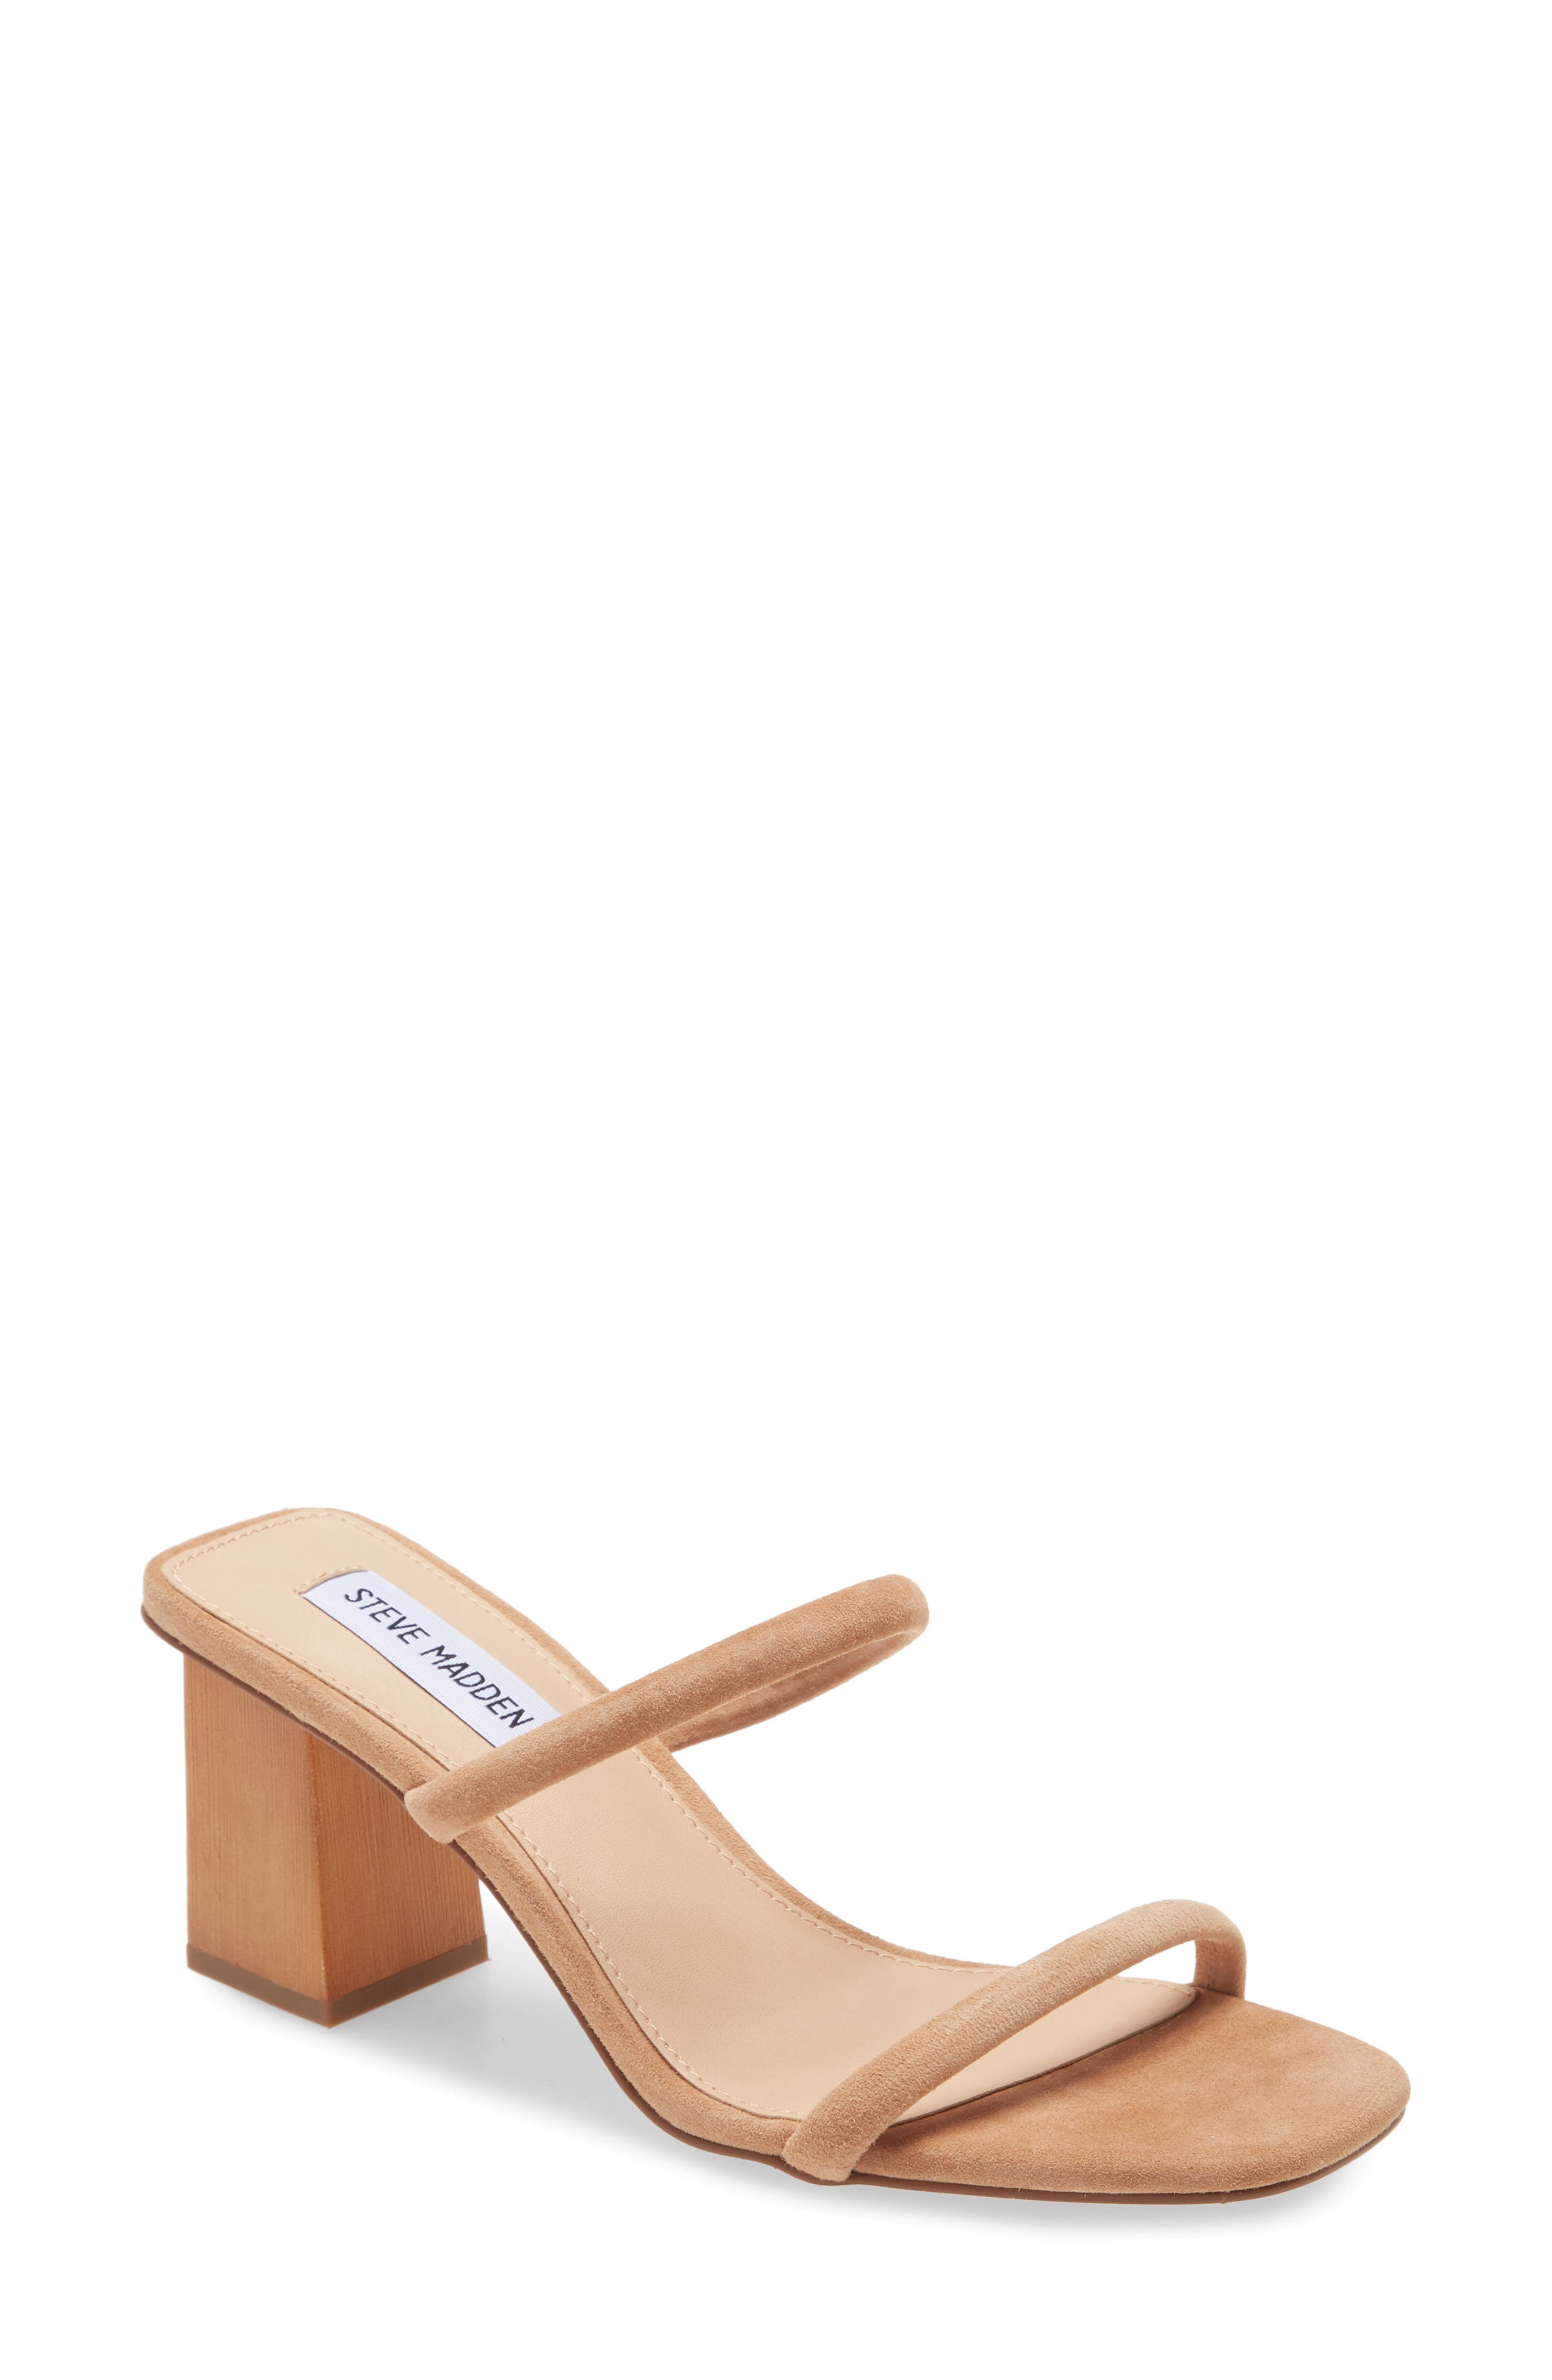 Buy > women's high heel slides > in stock